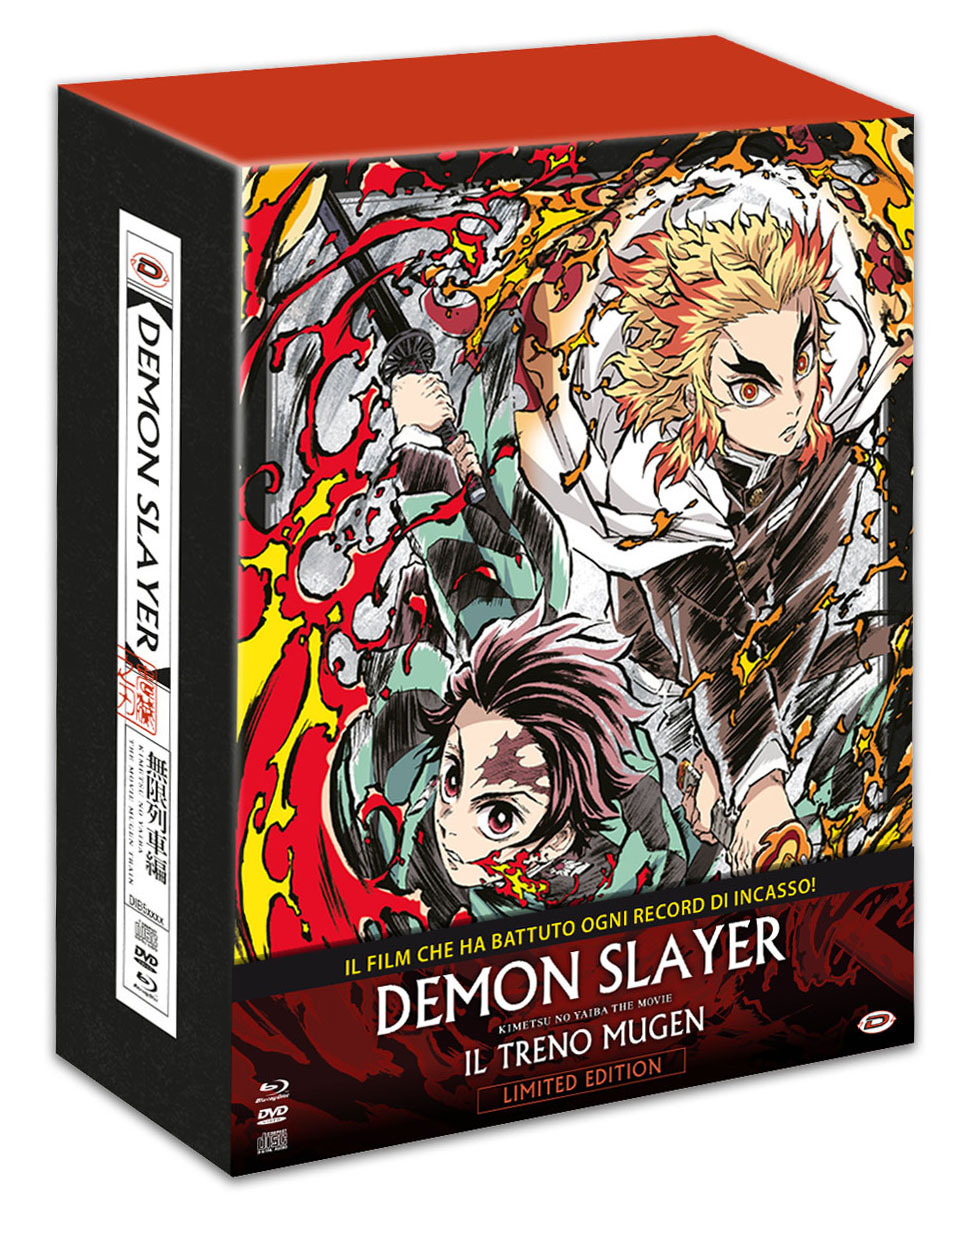 Blu-Ray Demon Slayer The Movie: Il Treno Mugen - Limited Edition (Blu-Ray+Dvd+Cd) NUOVO SIGILLATO, EDIZIONE DEL 20/04/2022 SUBITO DISPONIBILE